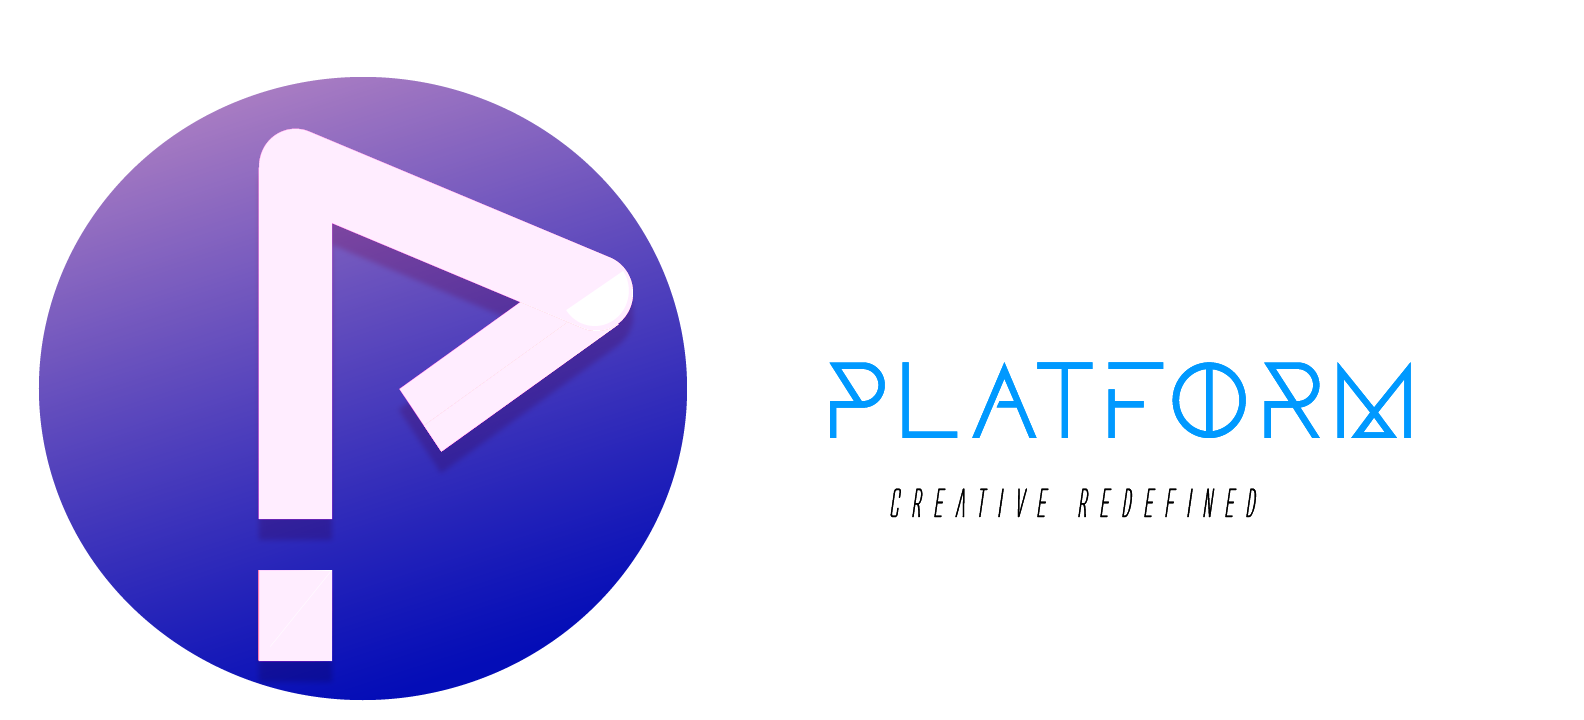 Platform Digital Media Agency LLC.